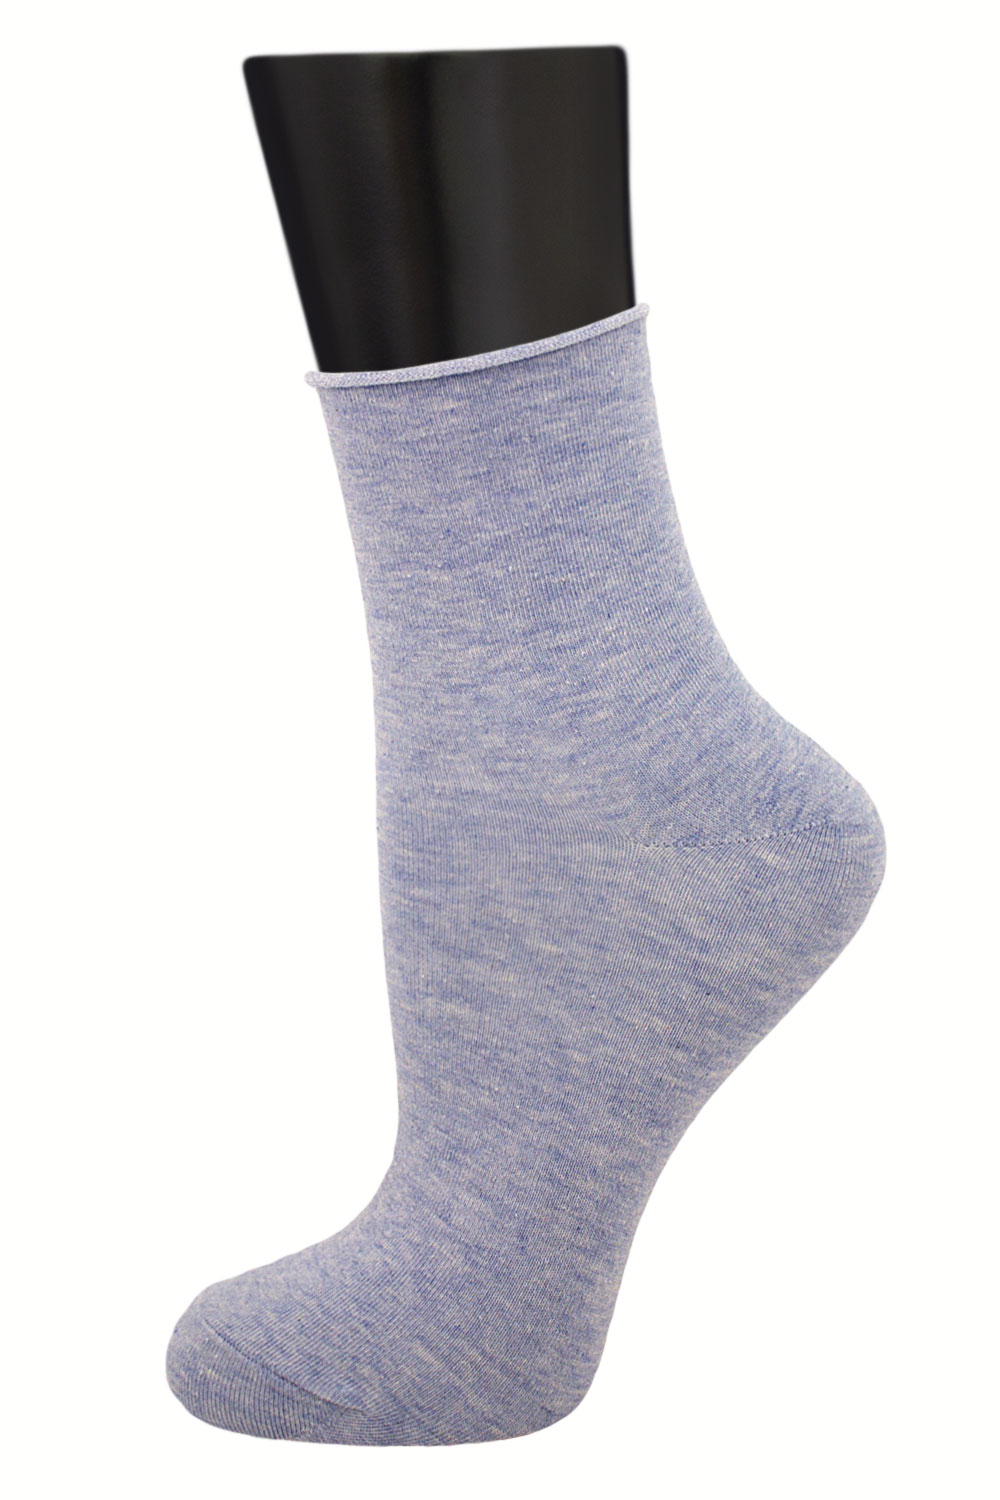 Комплект носков женских Гранд SCL127 голубых 23-25